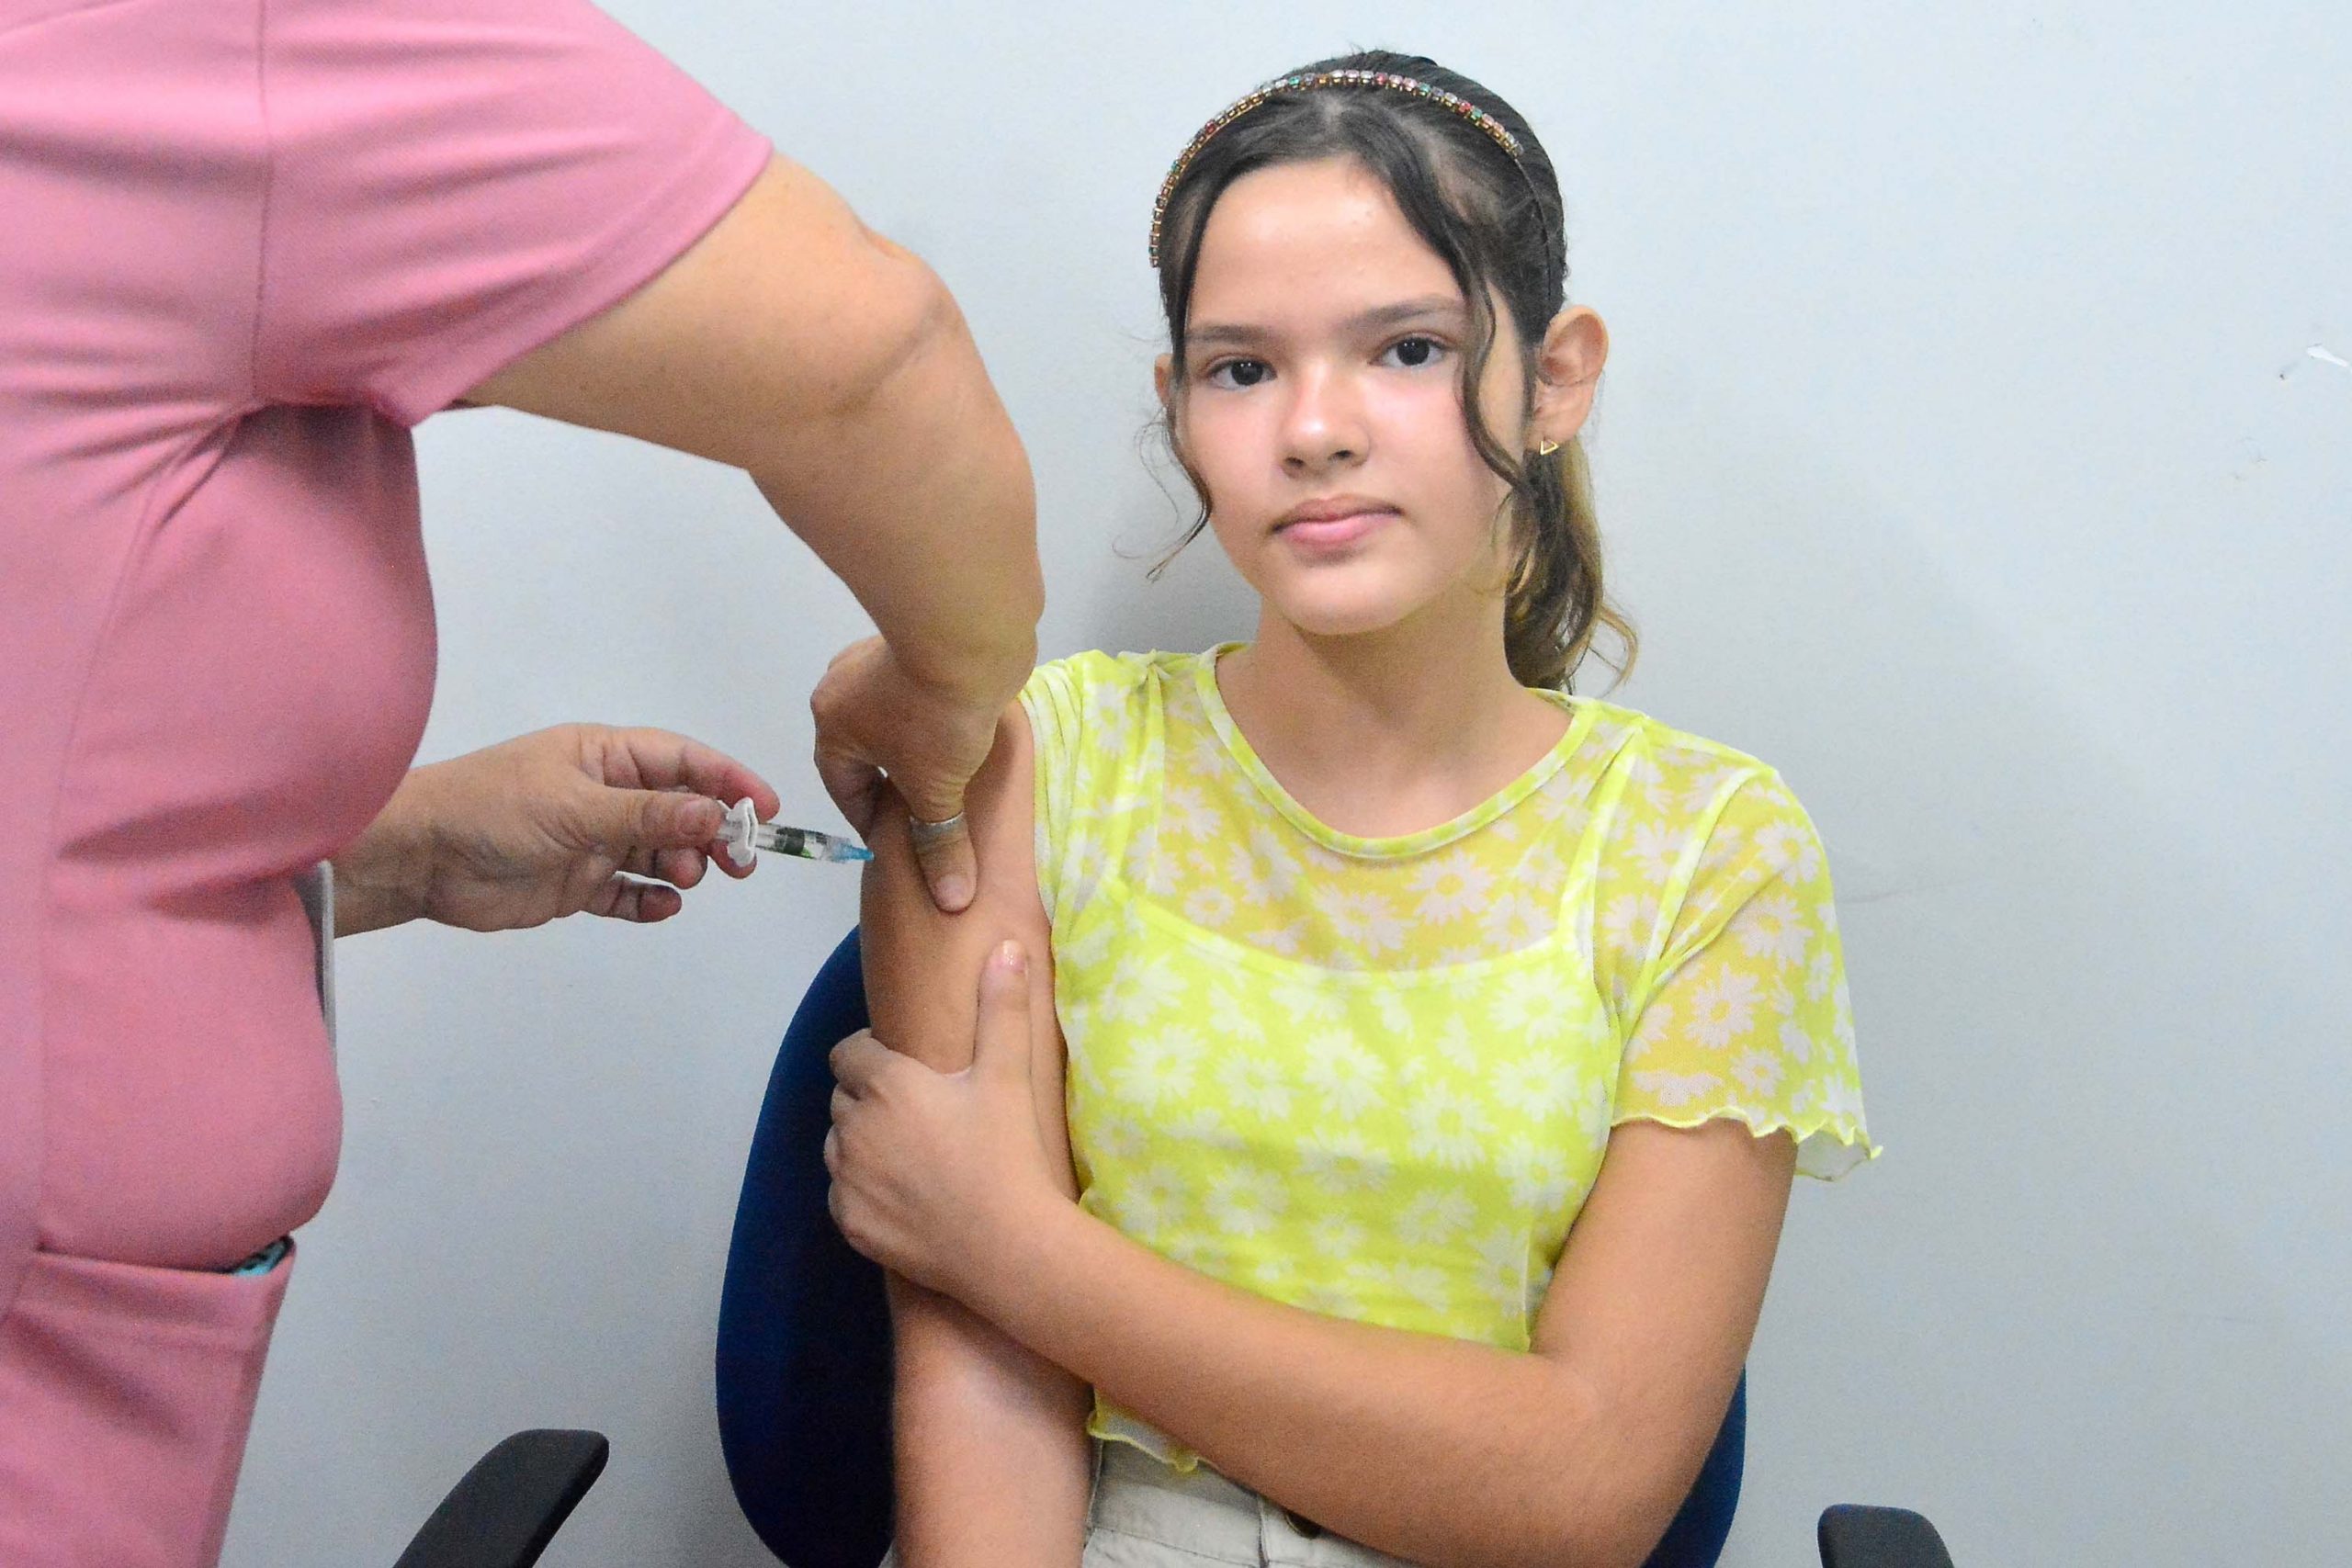 Prefeitura inicia a semana convocando a população para atenção na caderneta vacinal das crianças e adolescentes